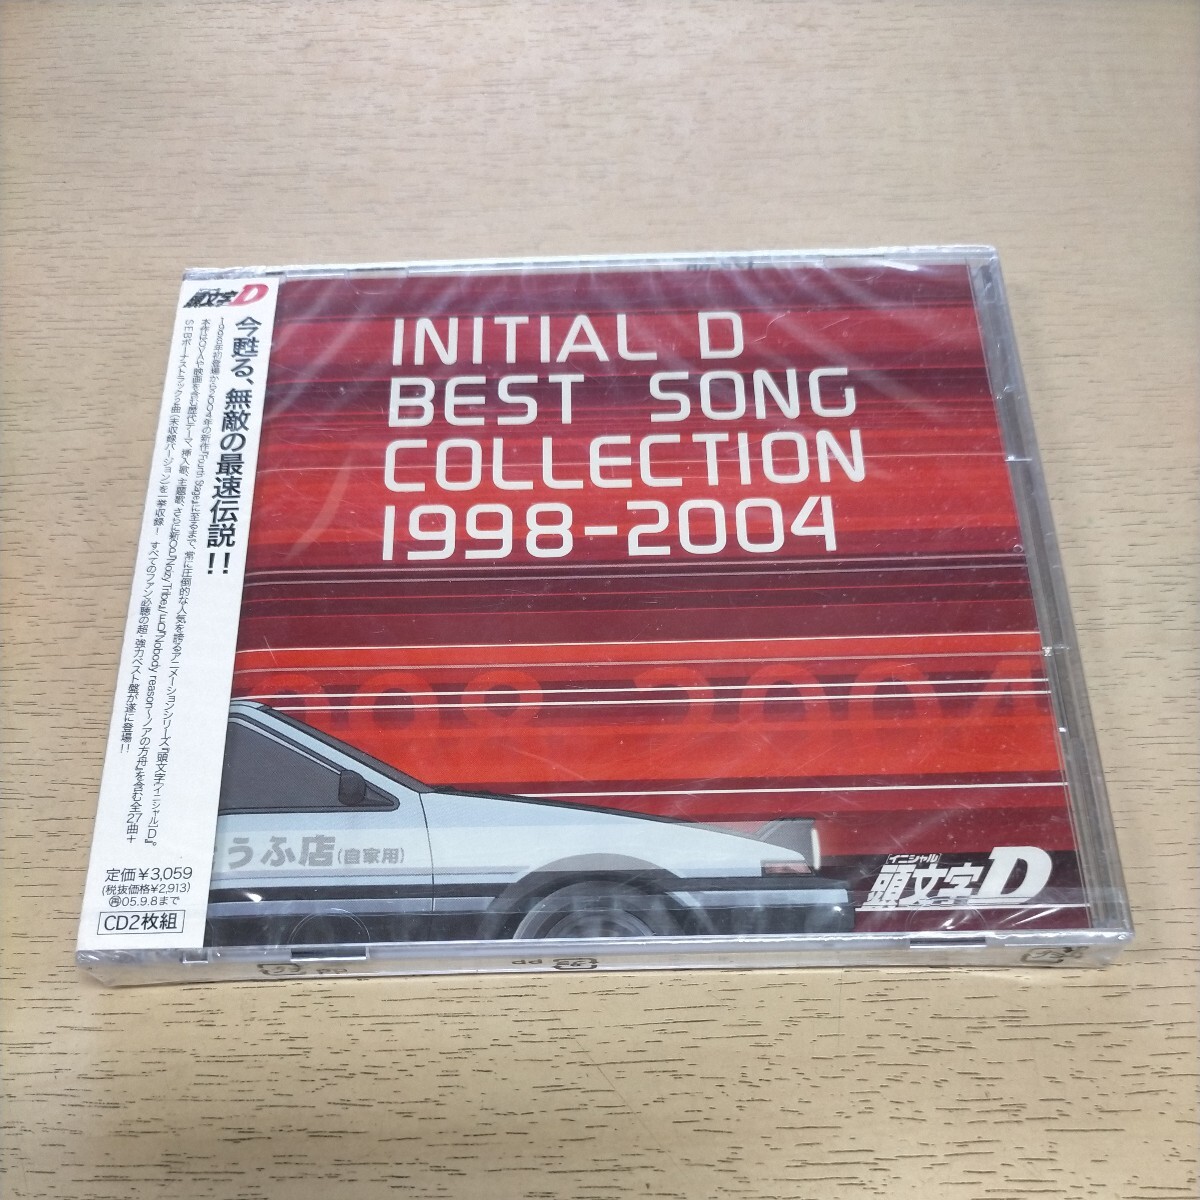 [ нераспечатанный ]INITIAL D BEST SONG COLLECTION 1998-2004 инициалы D initial D 2 листов комплект CD* воспроизведение не проверка / shrink потертость / претензии не принимаются .